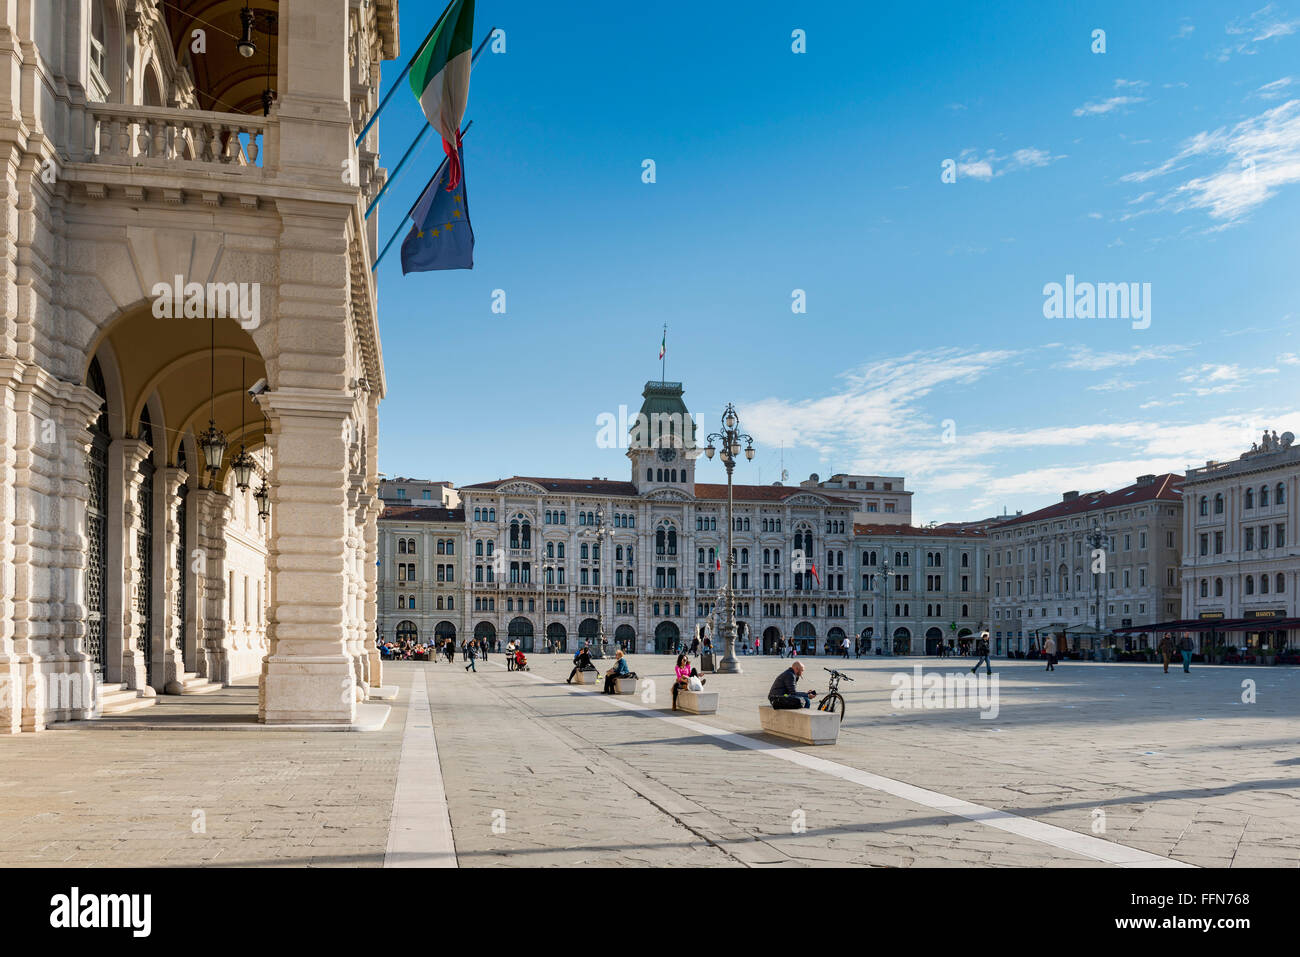 Trieste en Italie, les touristes à la Piazza Unità d'Italia, la place principale de Trieste, Italie, Europe Banque D'Images